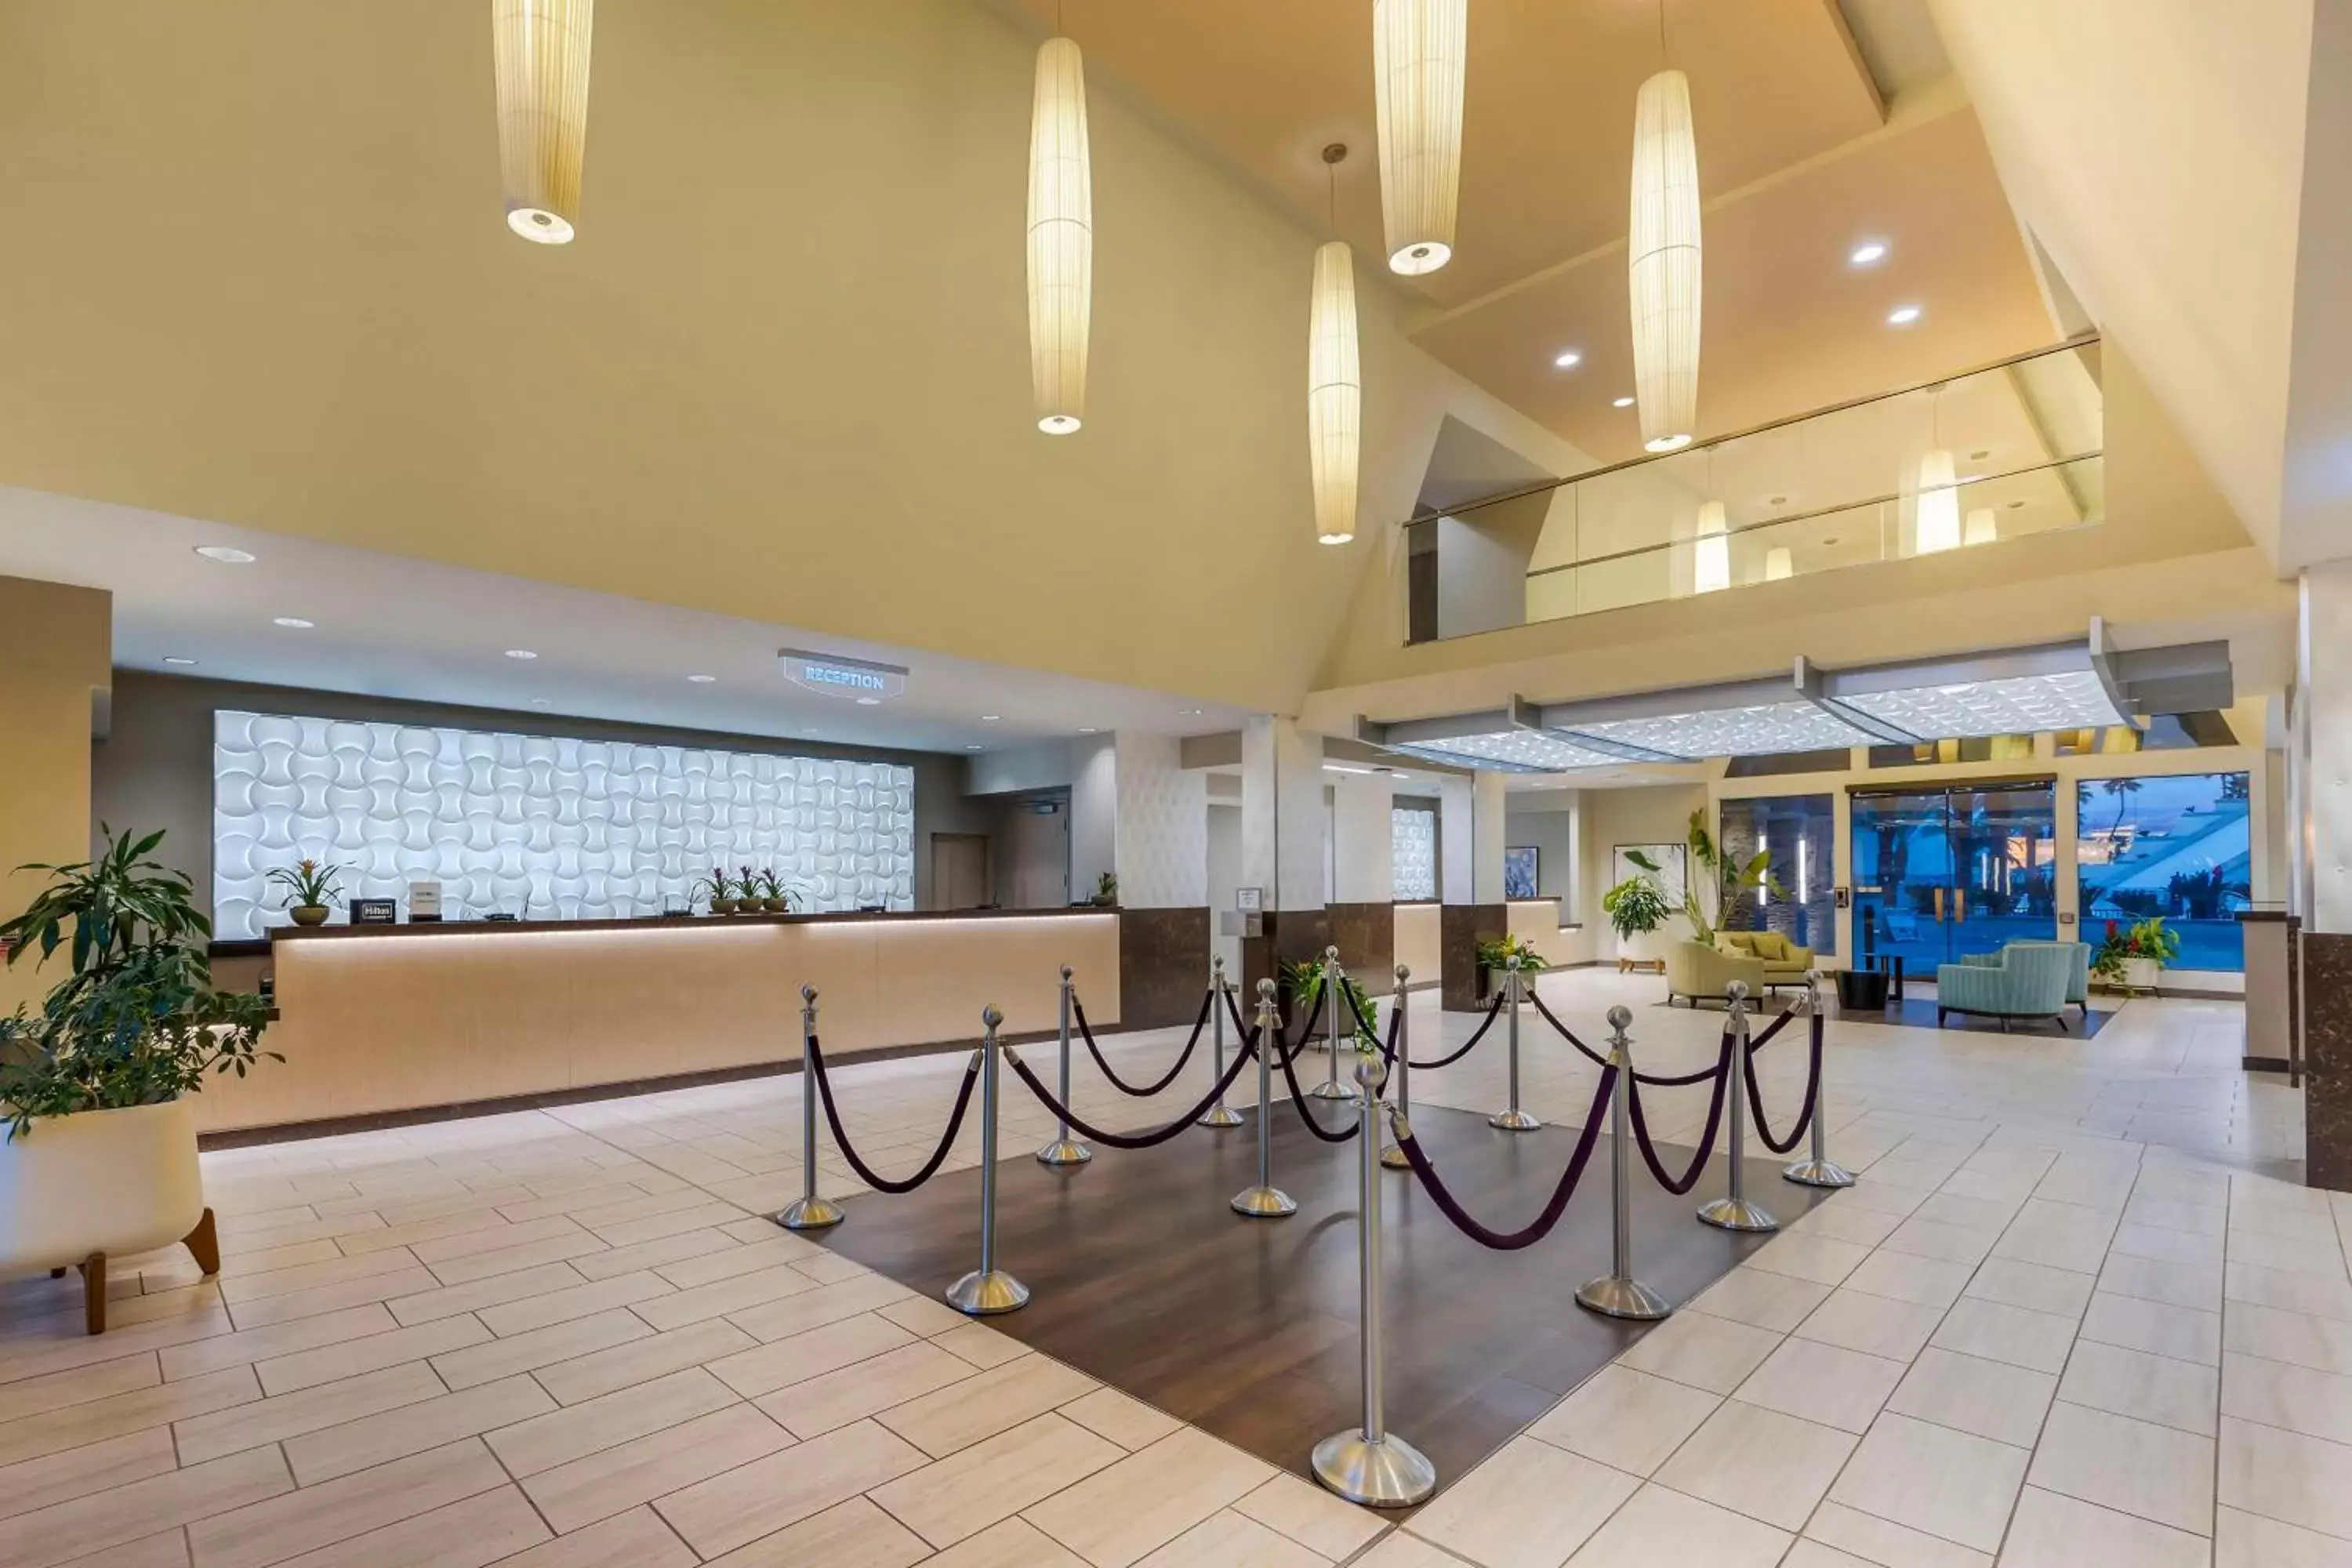 Lobby or reception, Lobby/Reception in Hilton Vacation Club Cancun Resort Las Vegas